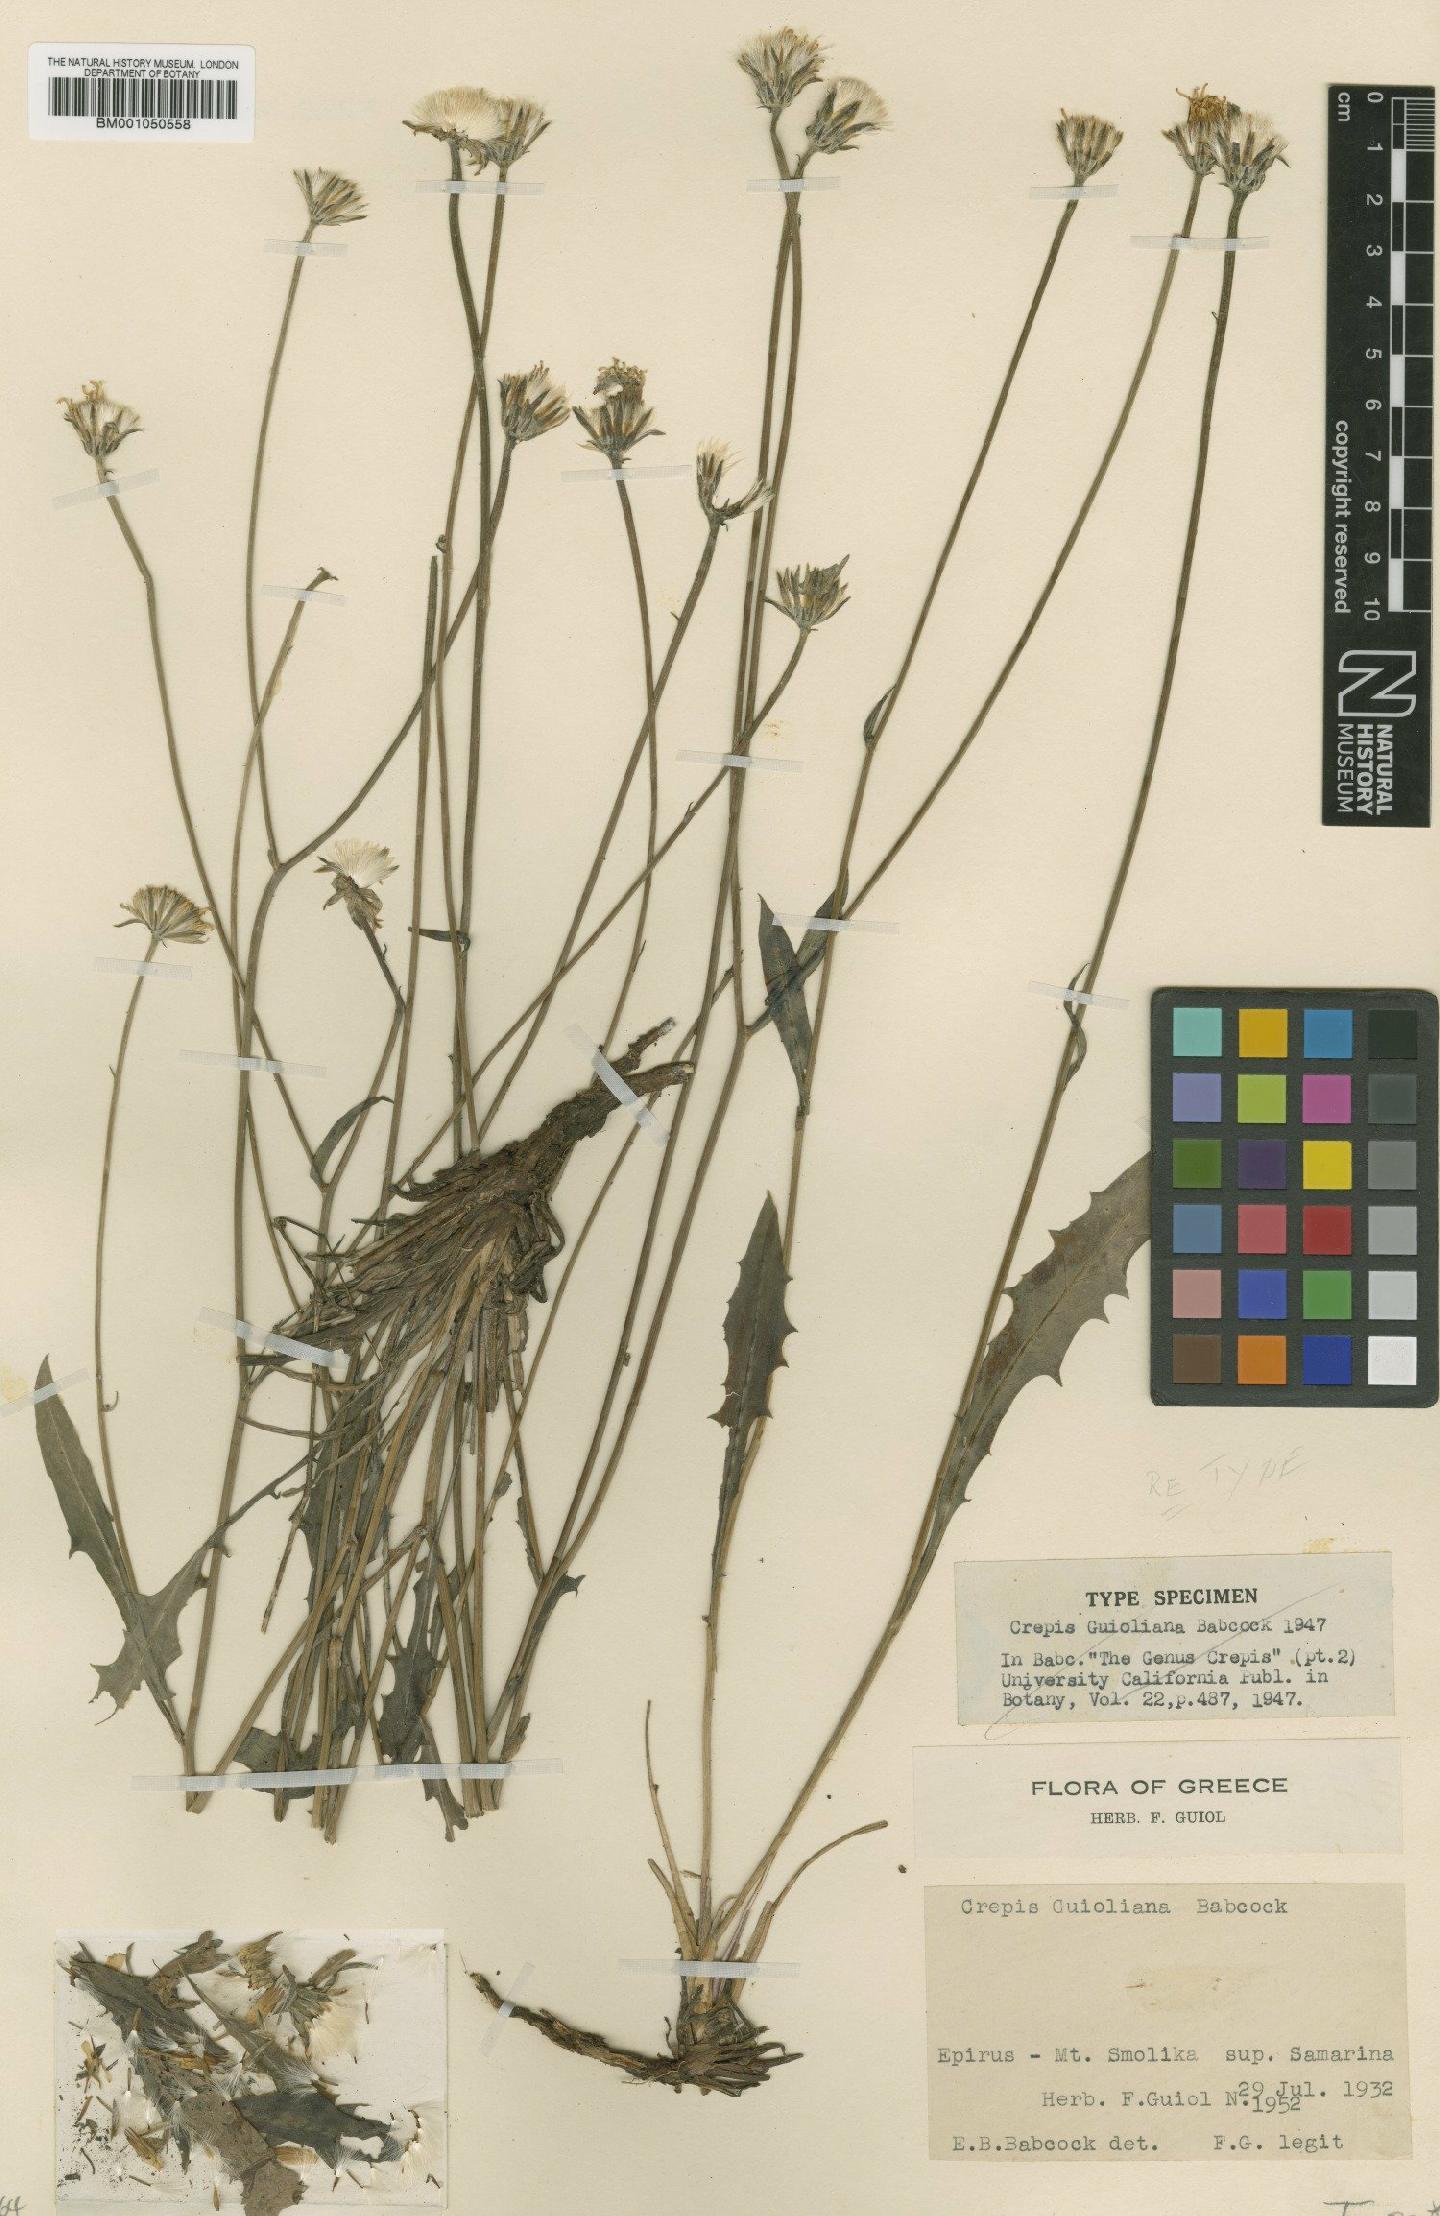 To NHMUK collection (Crepis guioliana Babc.; Type; NHMUK:ecatalogue:2395694)